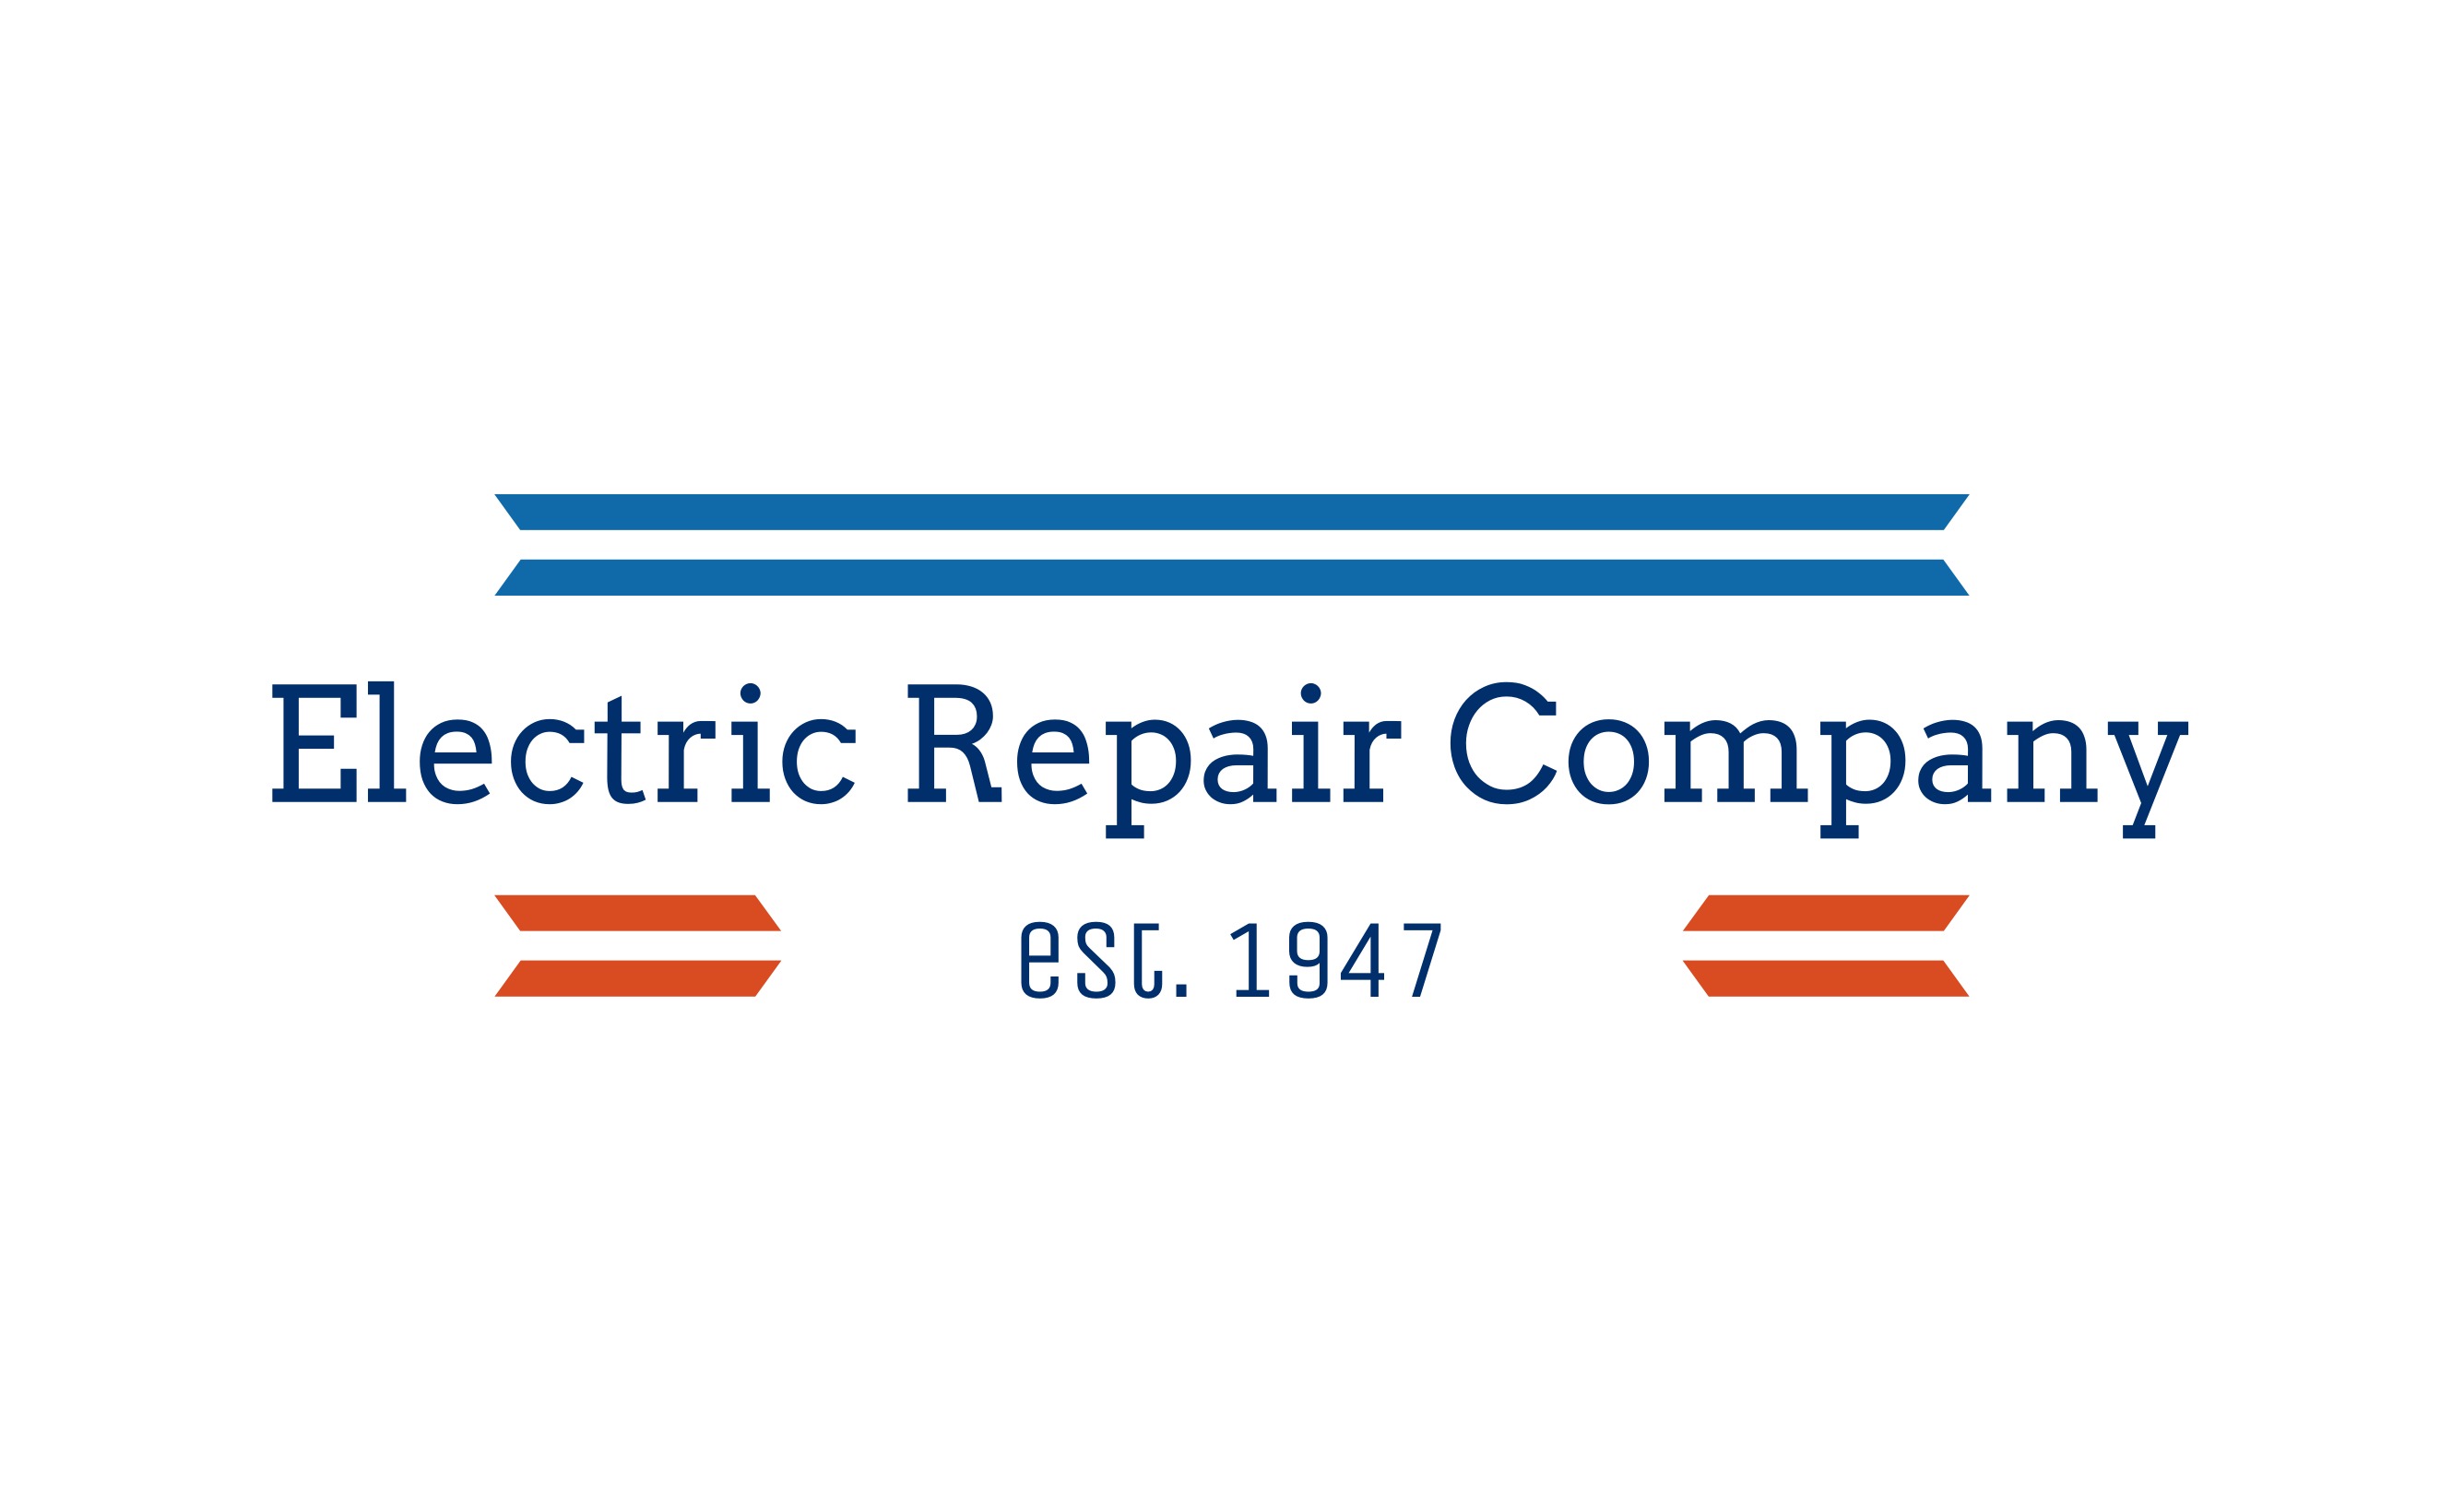 Electric Repair Company